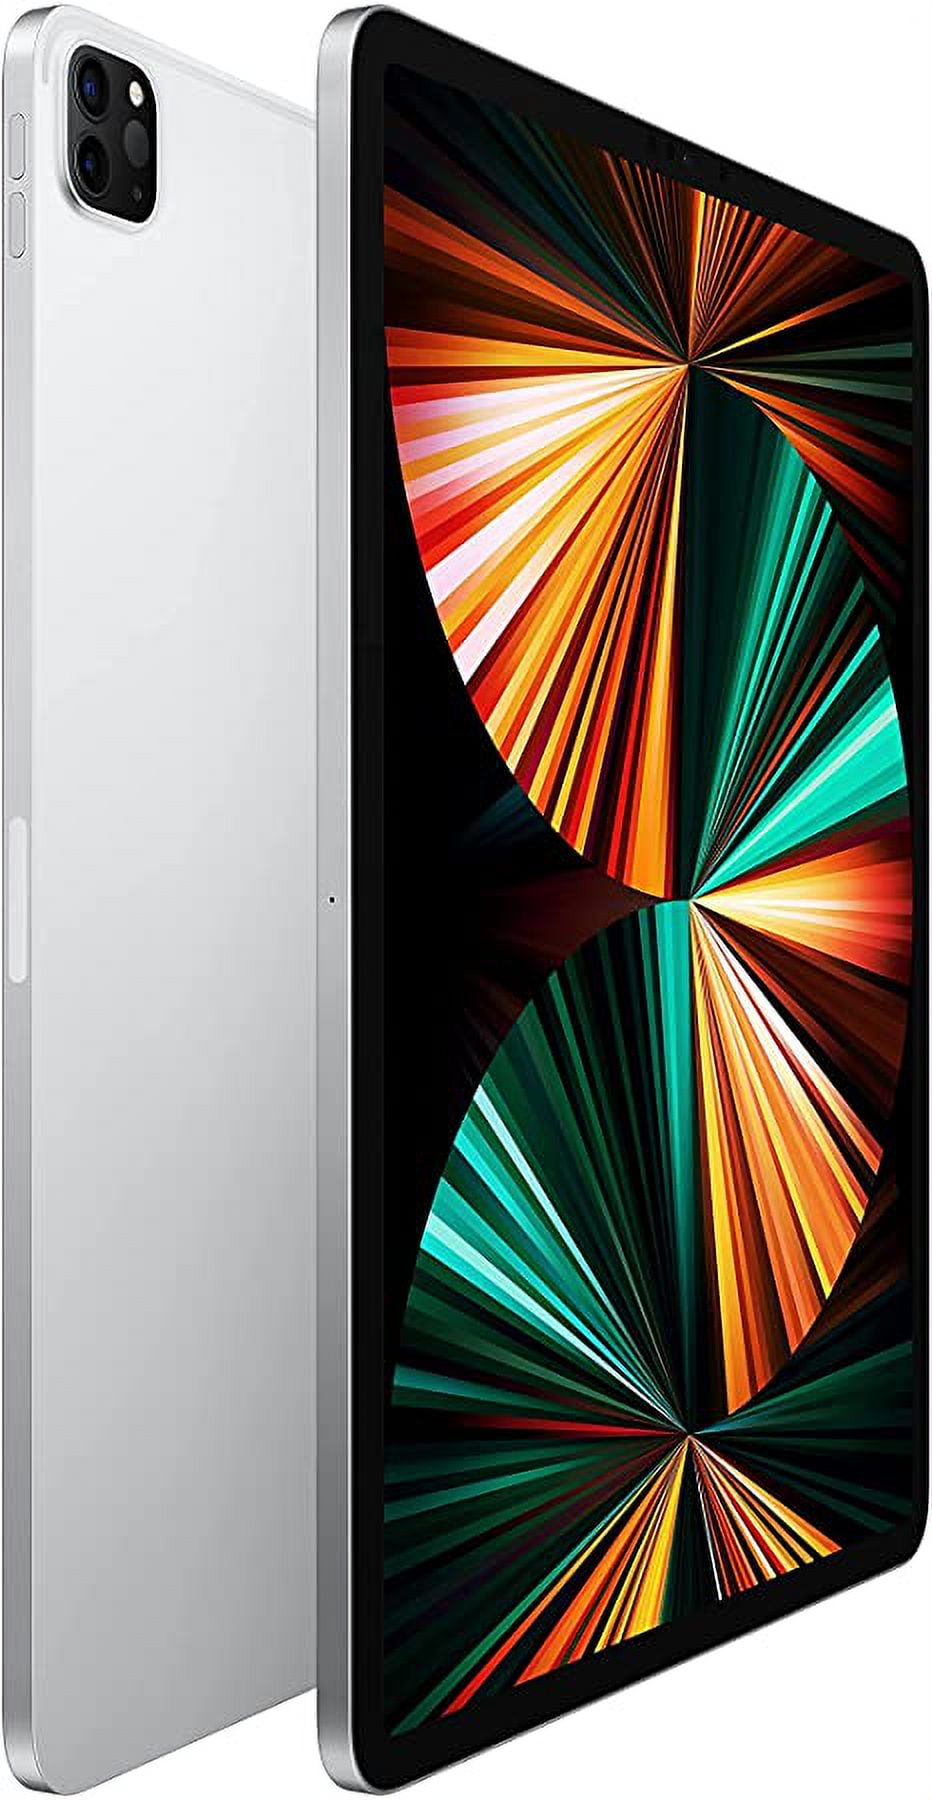 iPad Pro 12.9 5th Gen(A2378) 256GB Silver (Reacondicionado grado A)